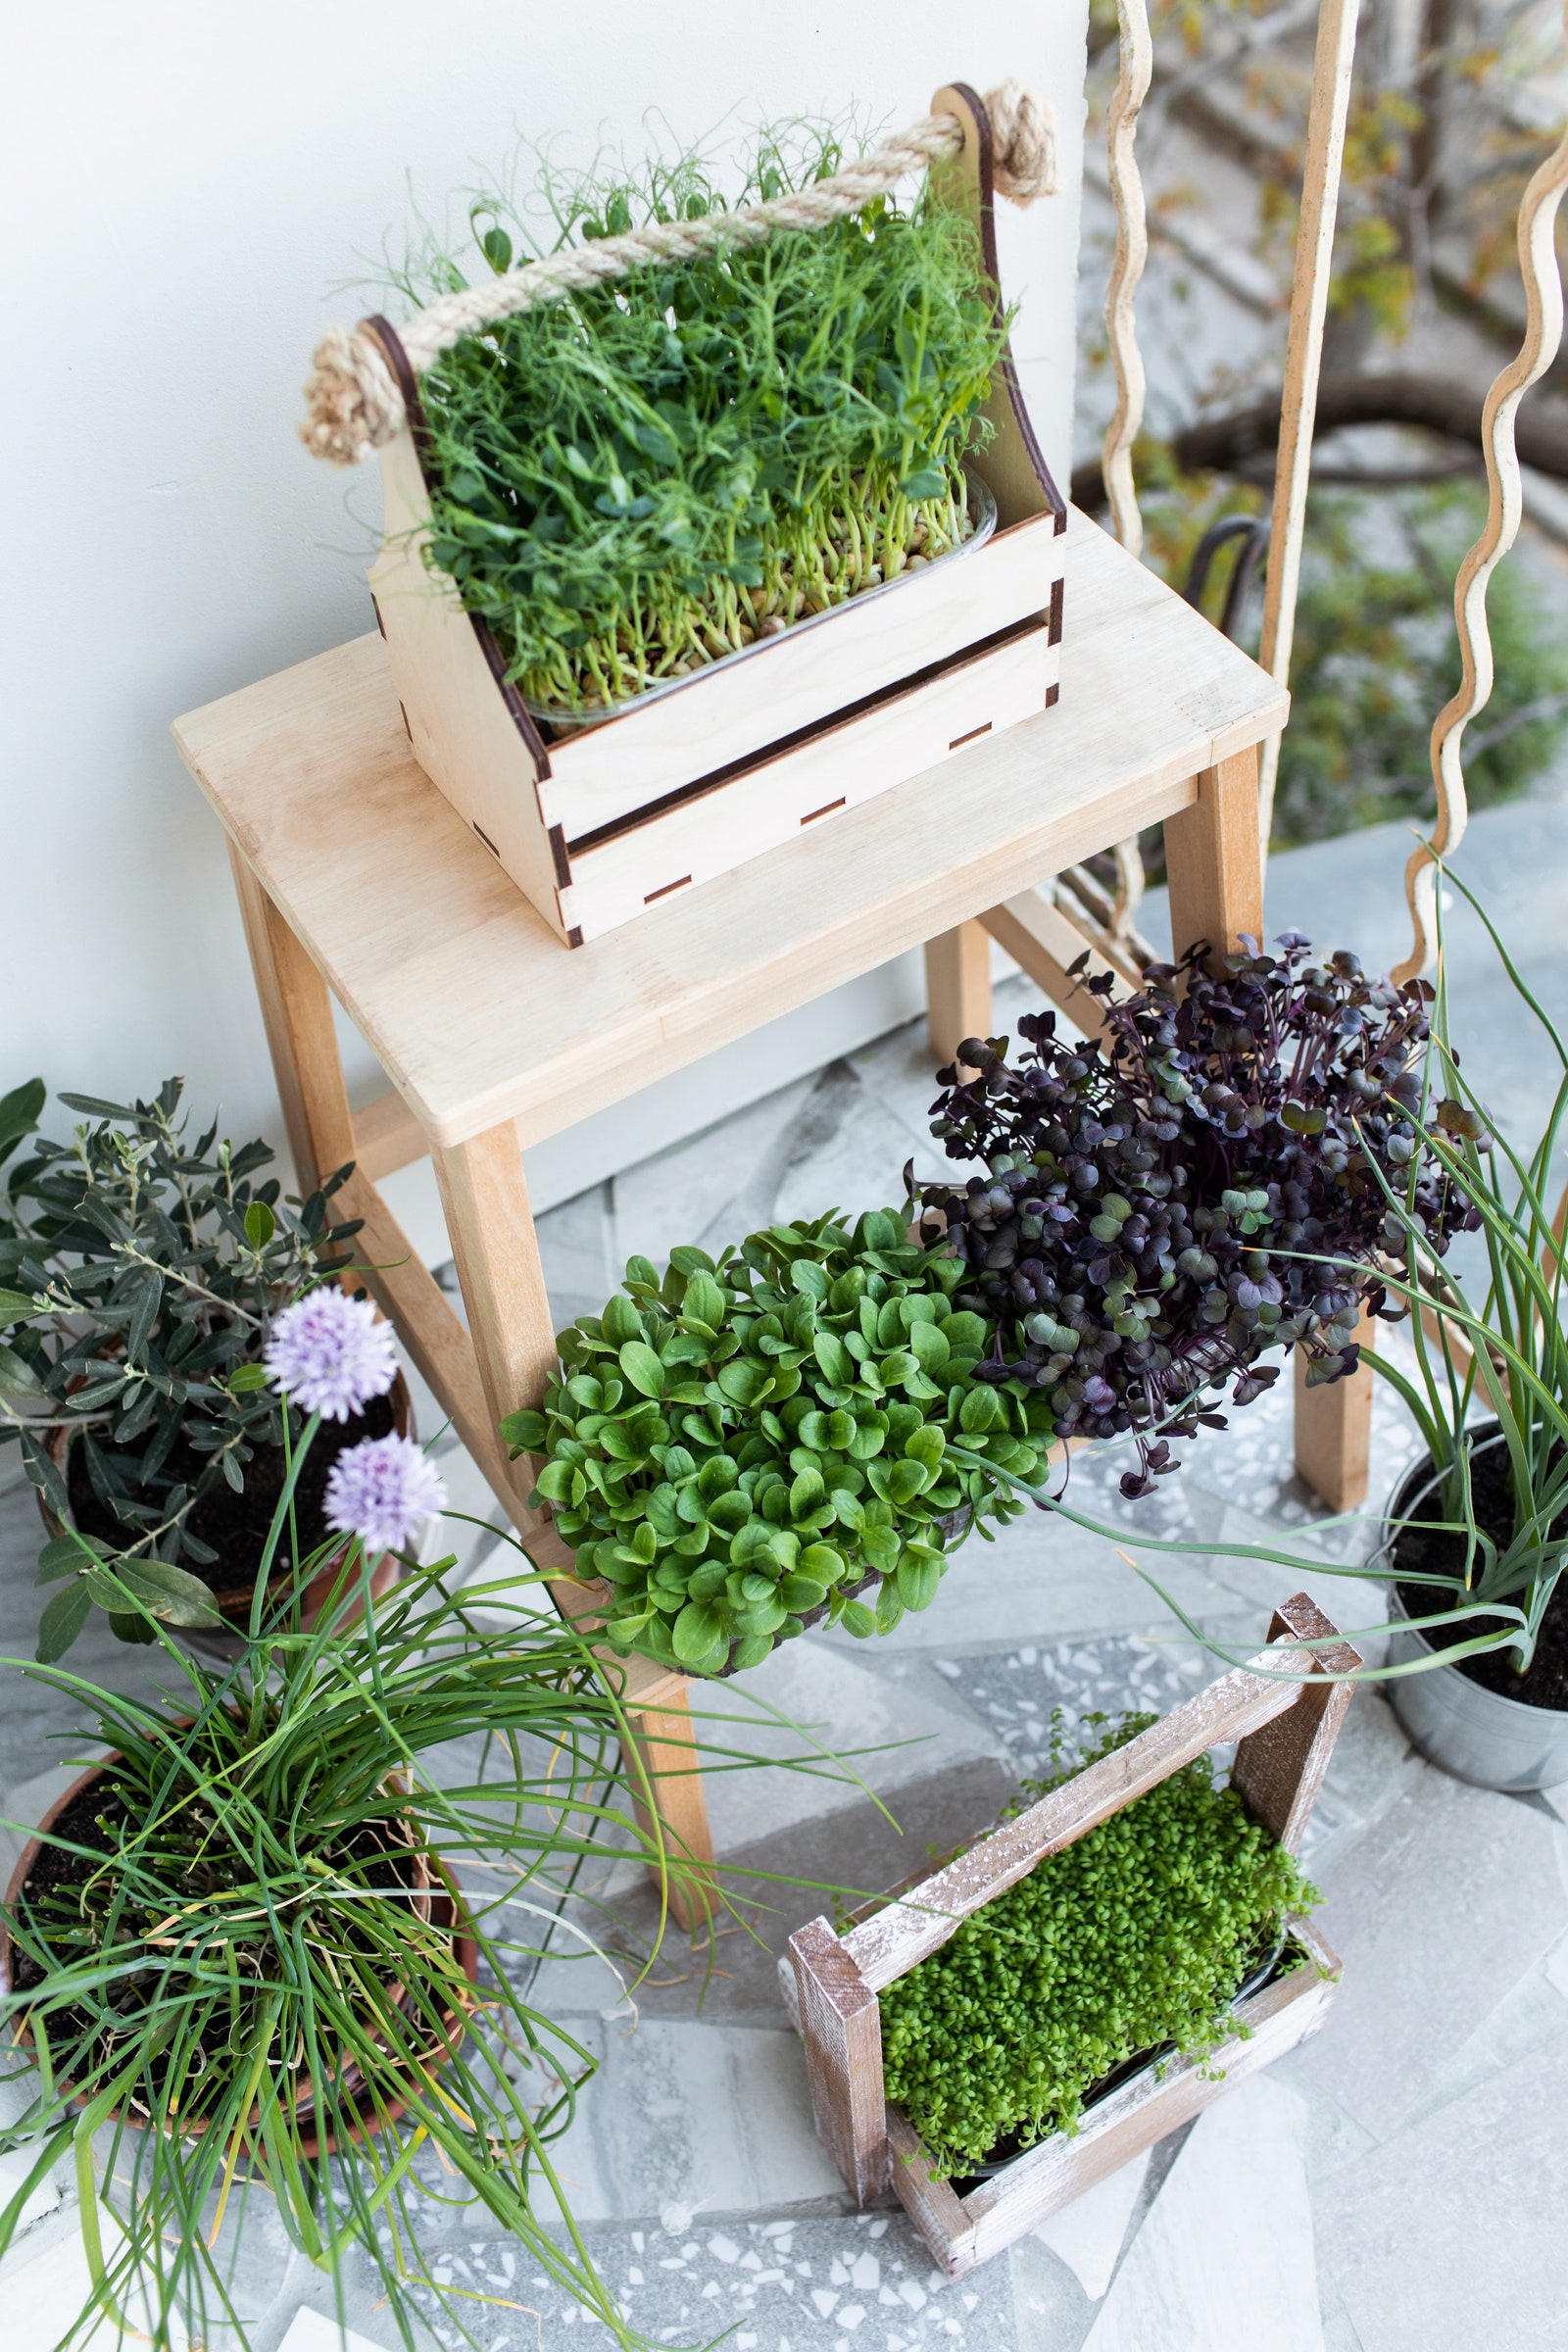 Микрозелень в домашних условиях как вырастить и как оформить сад